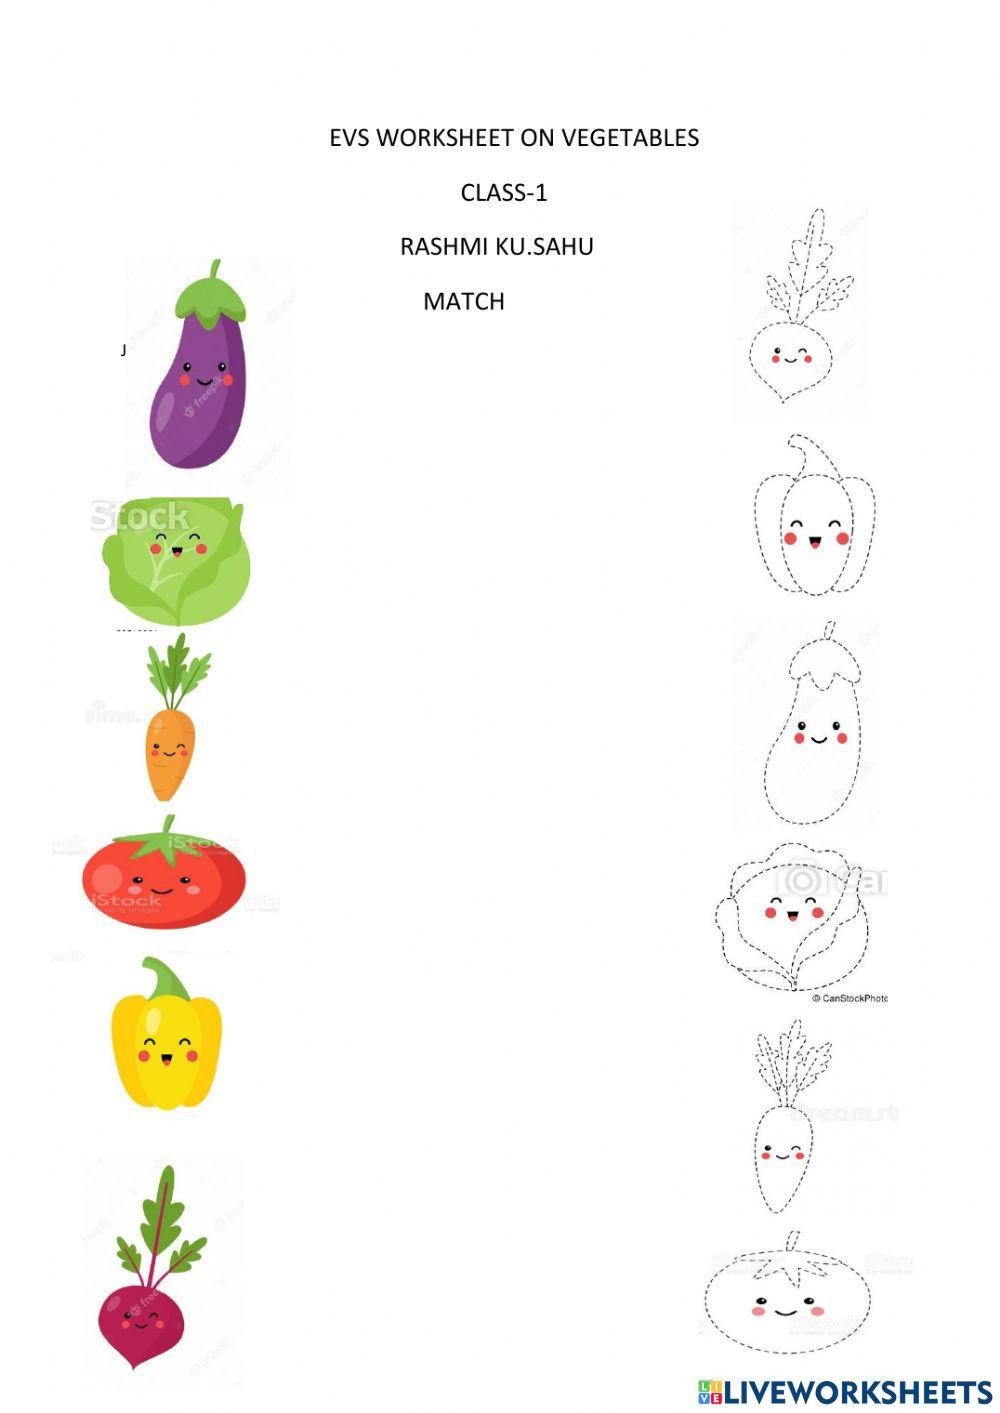 Worksheet on vegetables